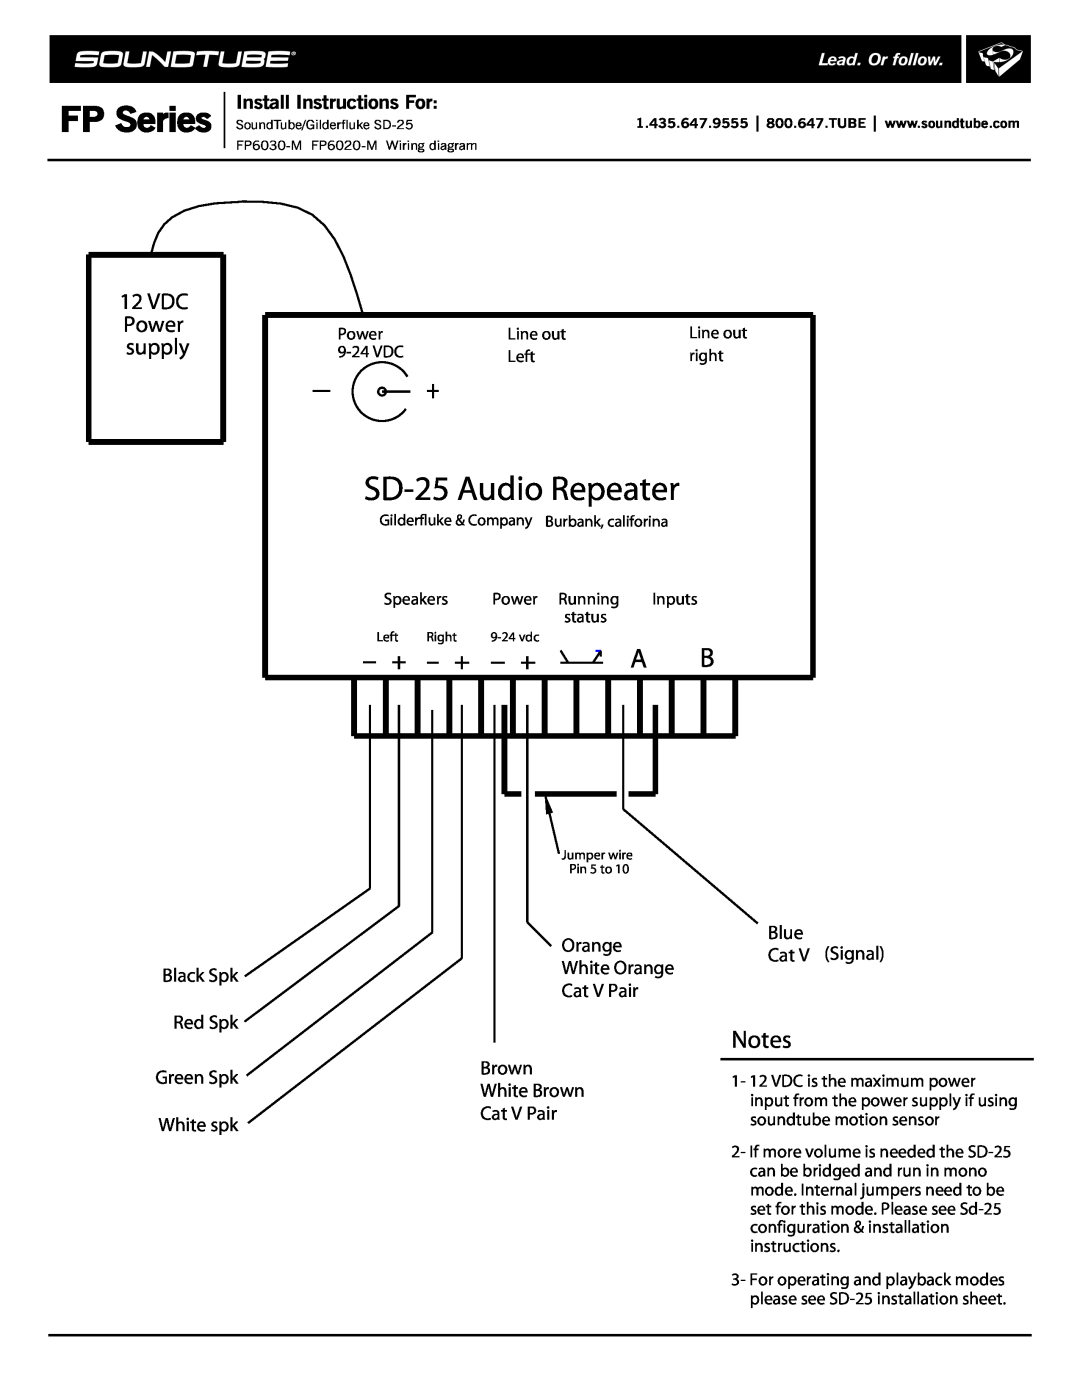 Phase Technology FP Series SD-25Audio Repeater, 12VDC Power supply, Black Spk Red Spk Green Spk White spk, Cat V Pair 